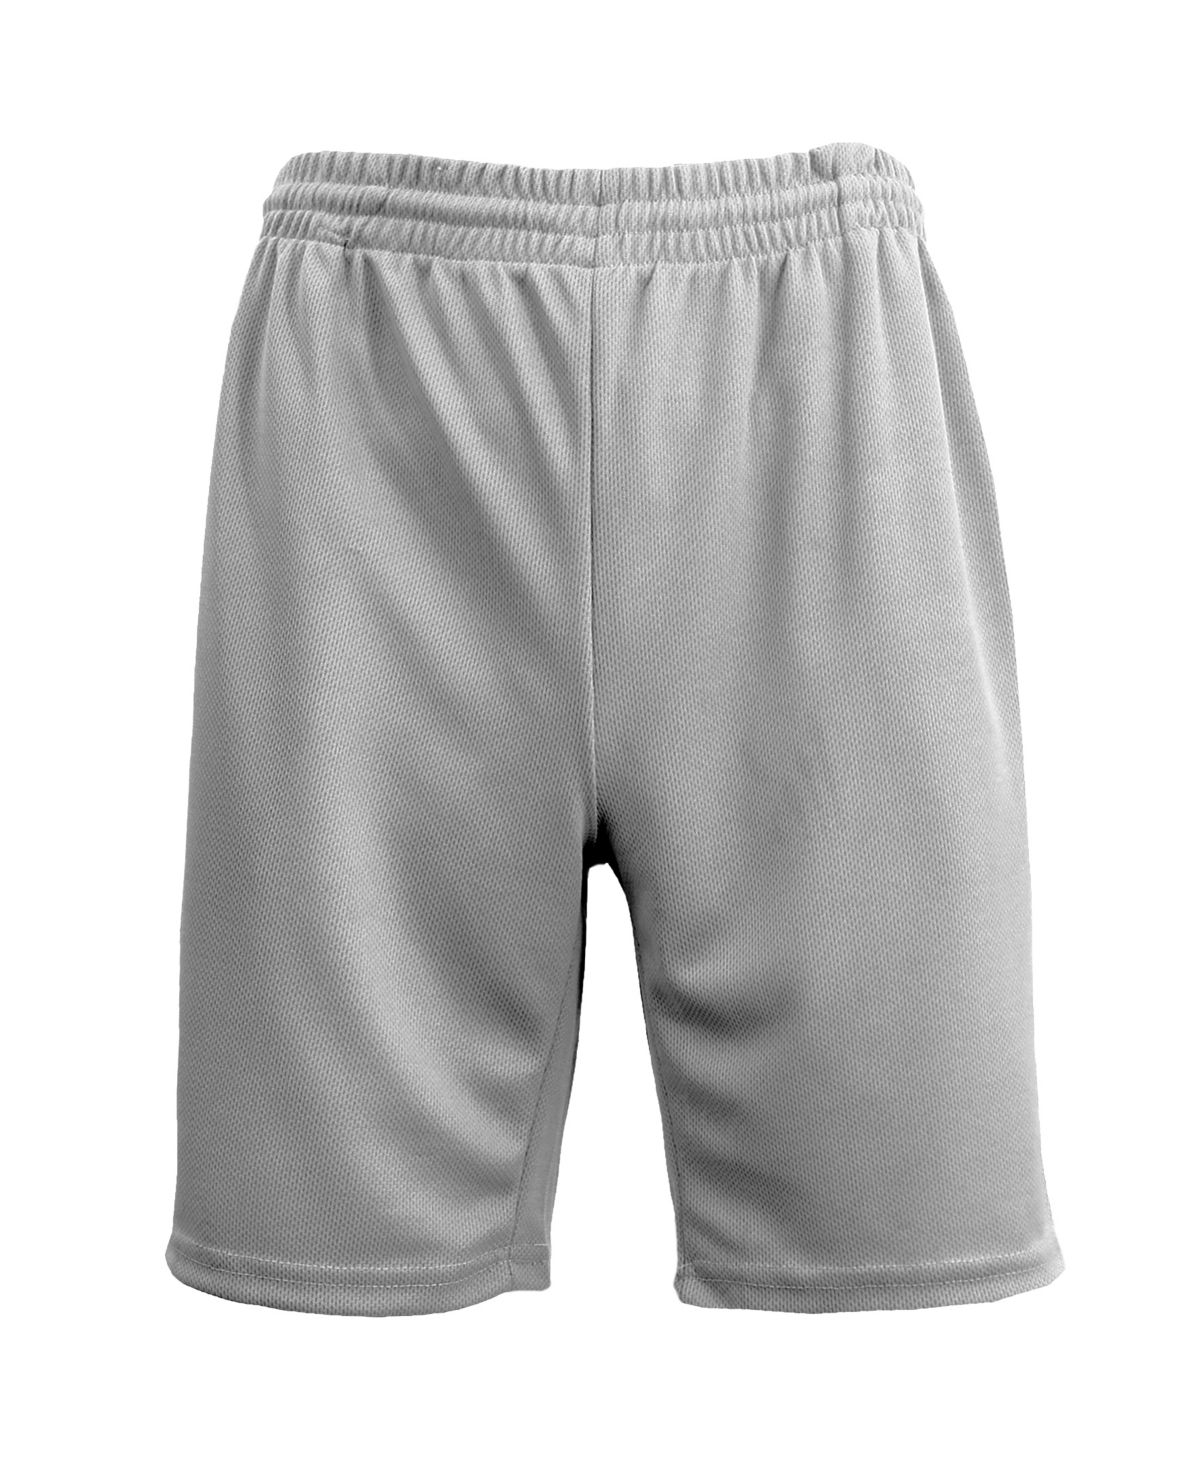 Men's Oversized Moisture Wicking Performance Basic Mesh Shorts - Silver